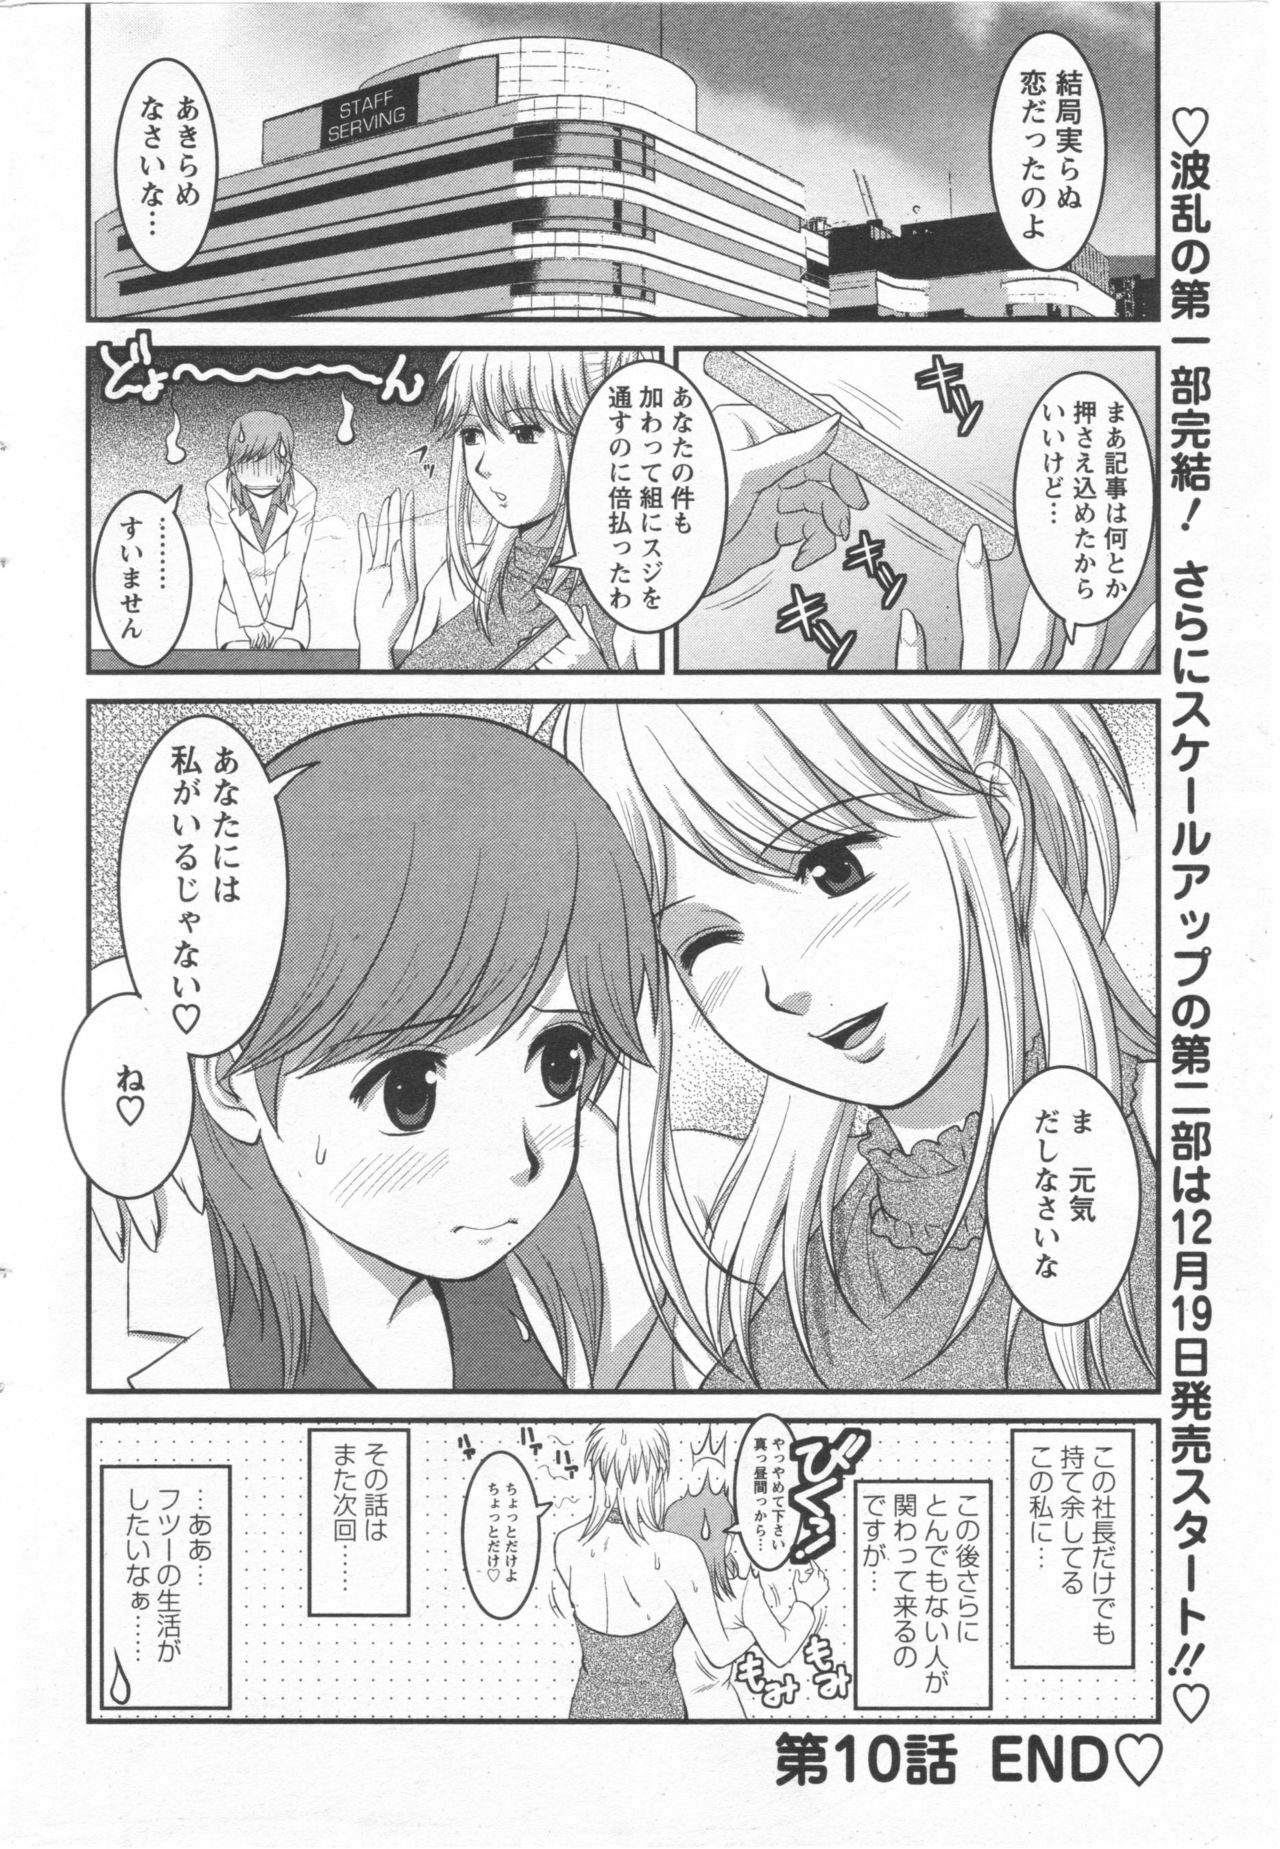 Haken no Muuko-san 10 [Saigado] page 21 full